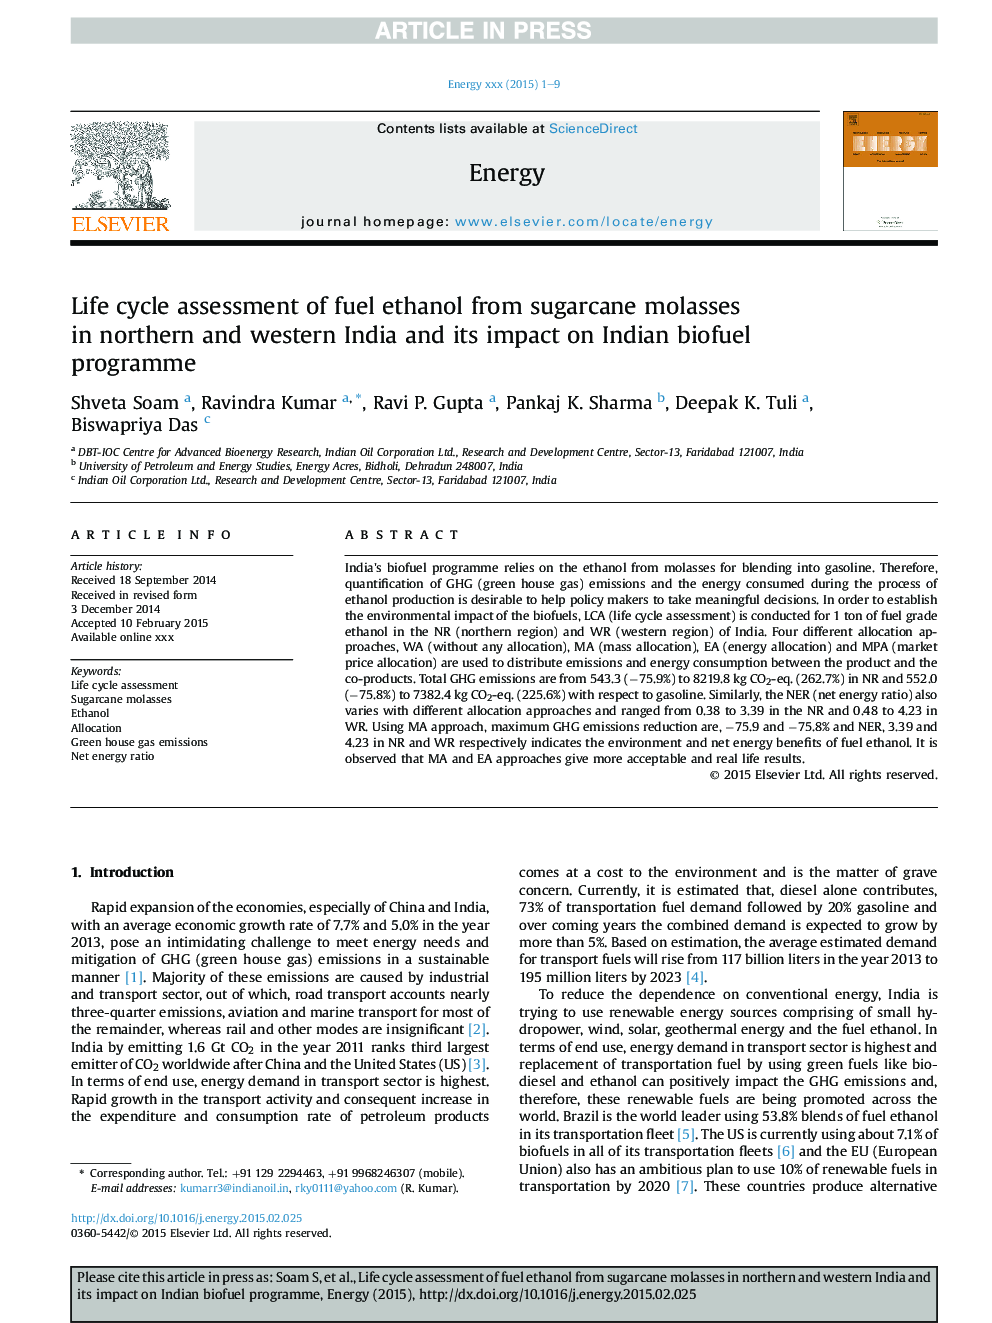 ارزیابی چرخه حیات اتانول سوختی از ملاسس نیشکر در شمال شرقی و غربی هندوستان و تأثیر آن بر برنامه سوخت زیستی هند 